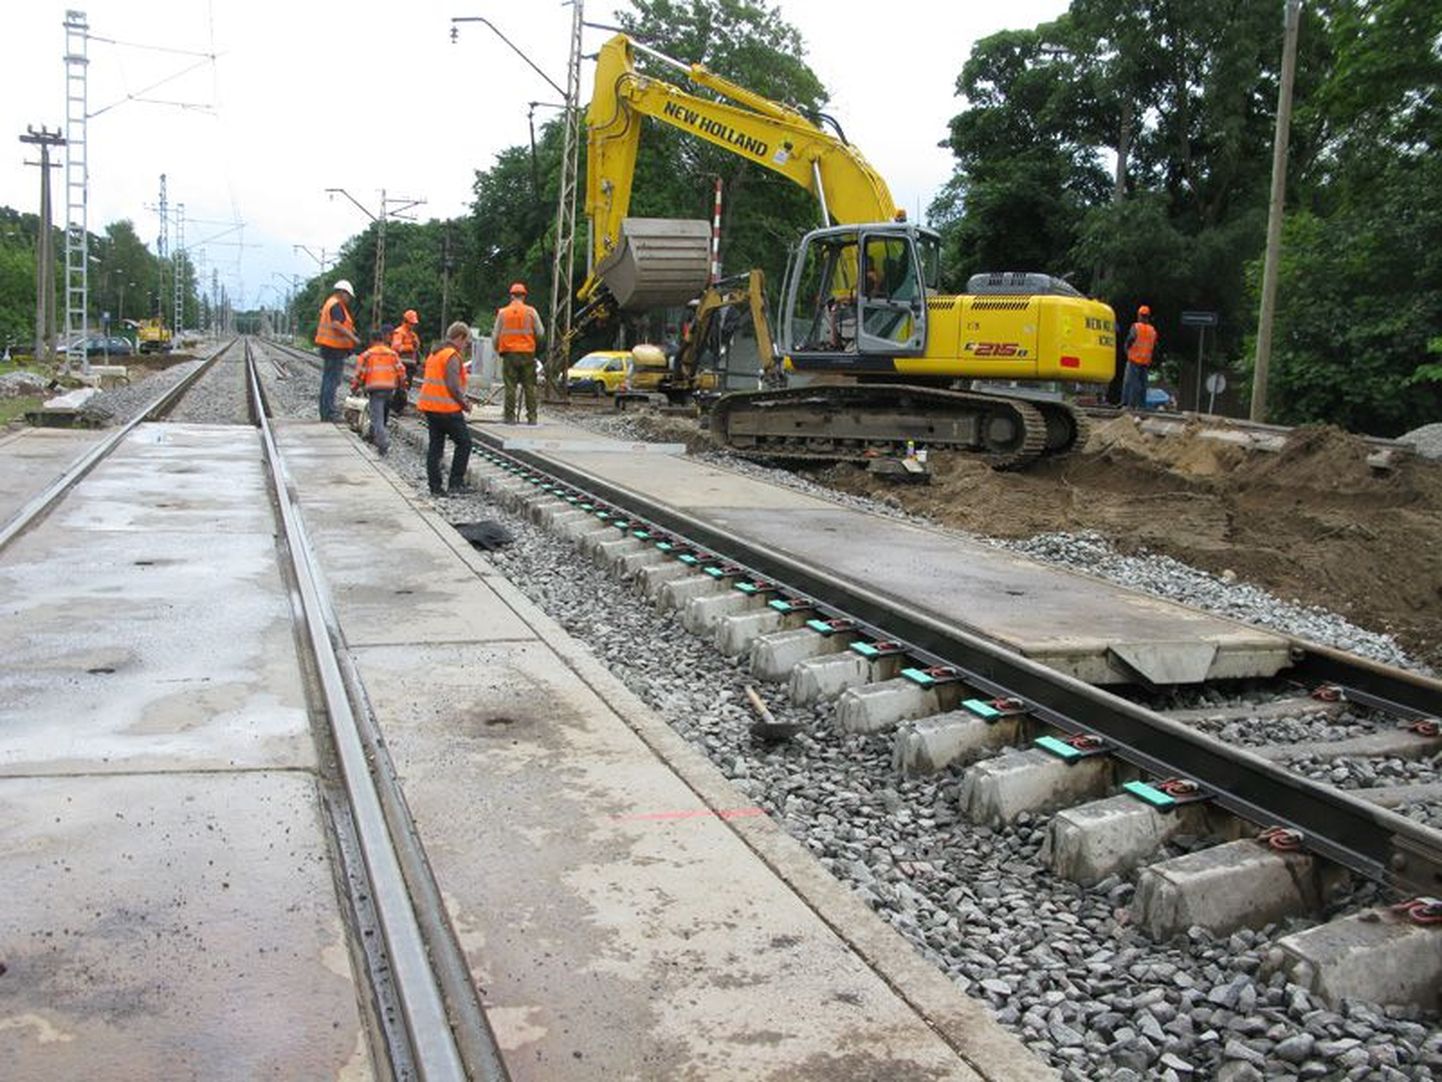 Tapa-Tartu raudteeliini renoveerimistööd algavad septembris.